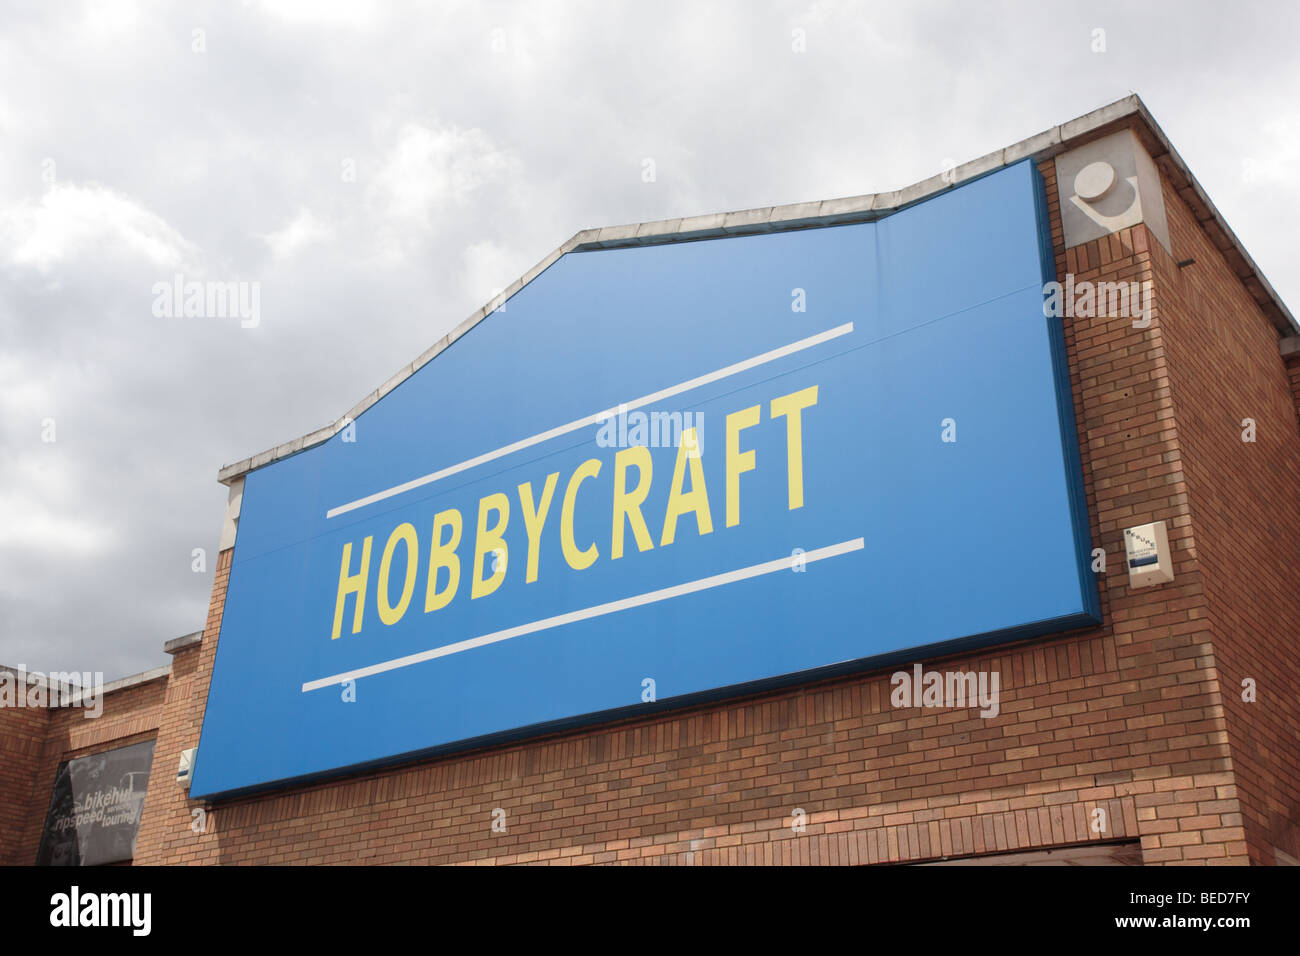 Hobbycraft store Stock Photo